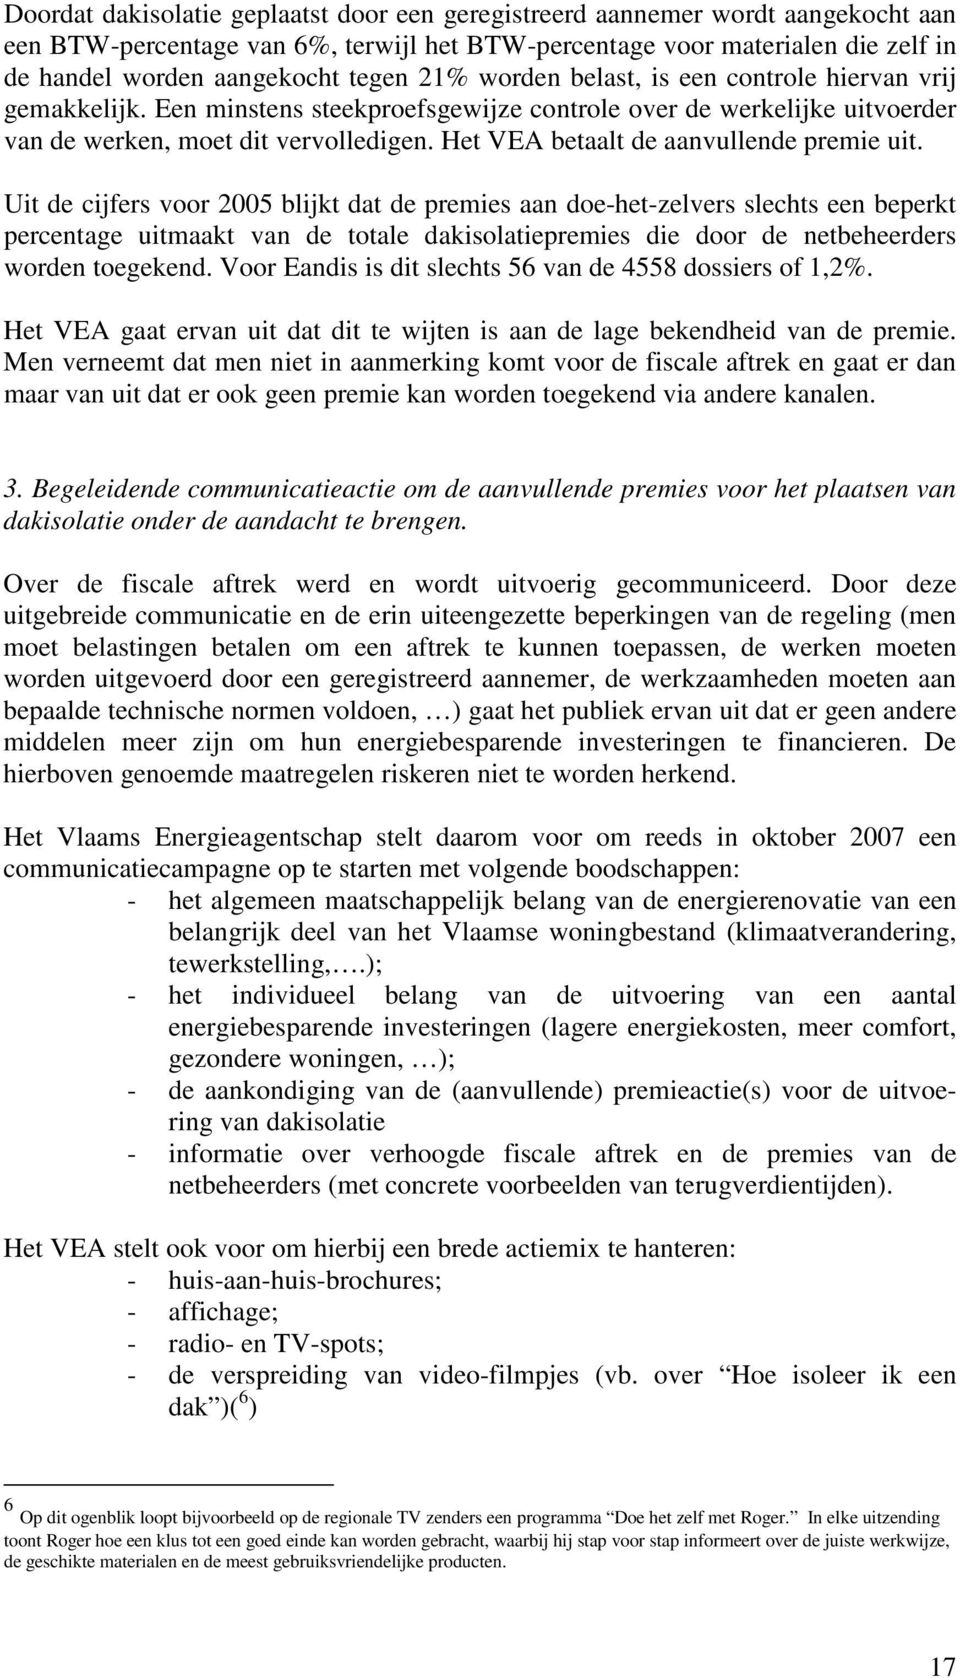 Het VEA betaalt de aanvullende premie uit.